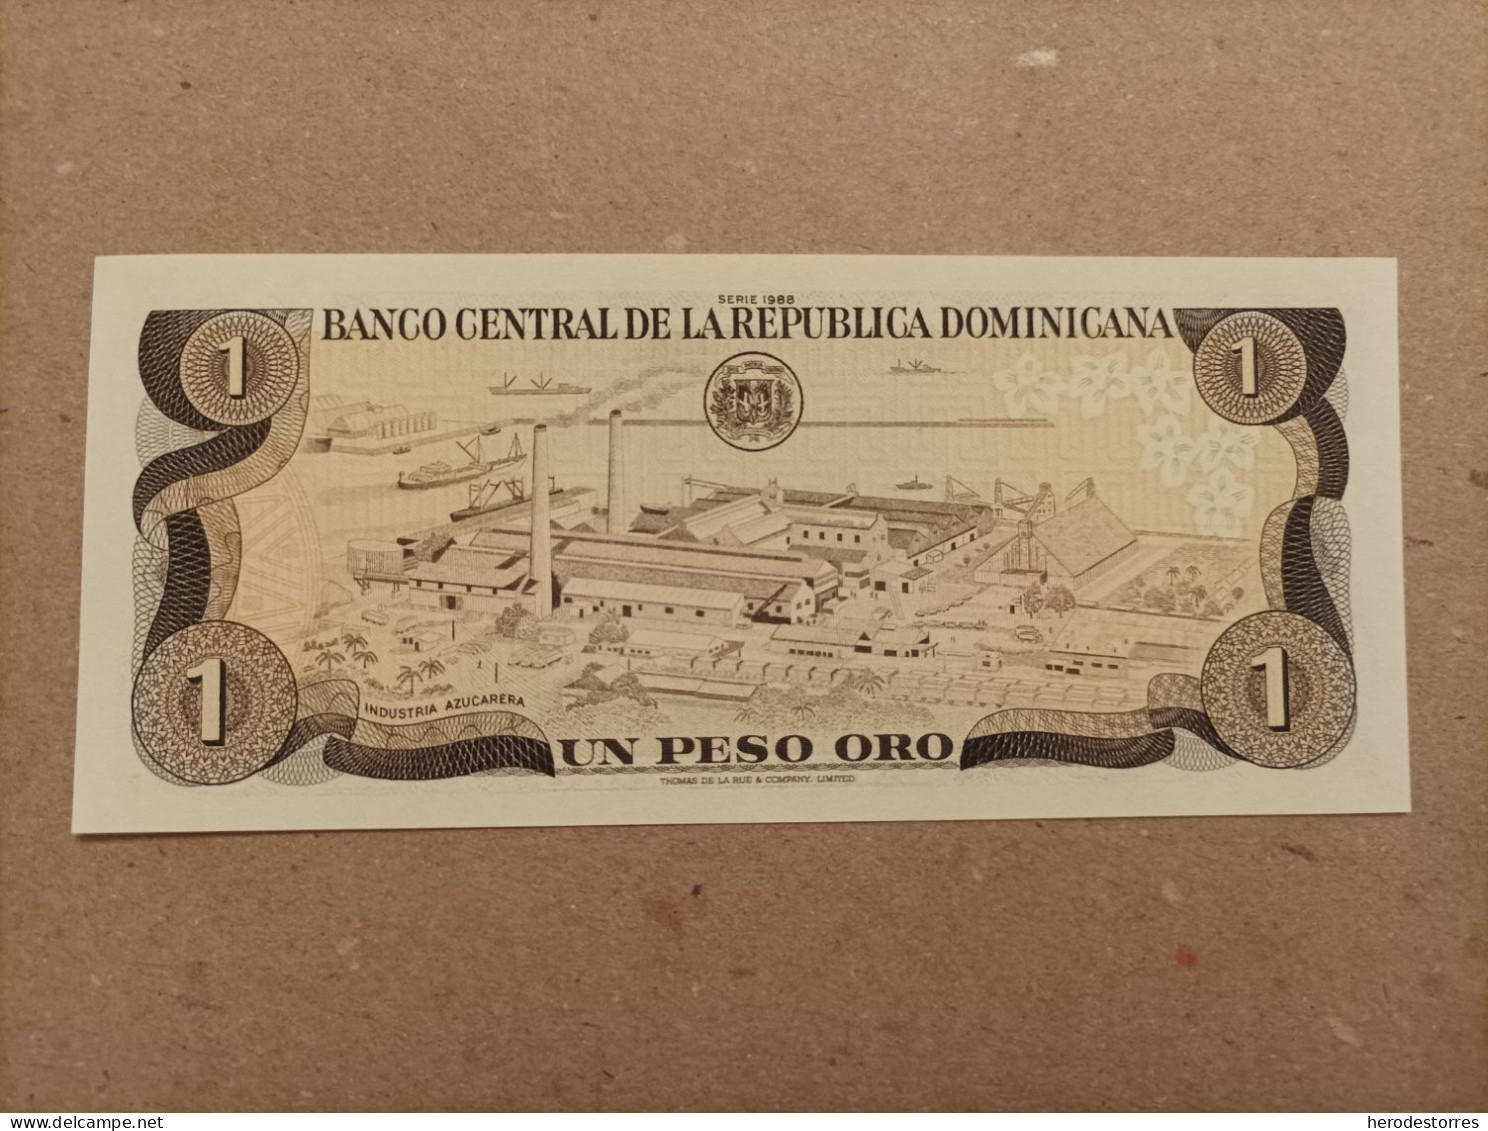 Billete De Republica Dominicana De 1 Peso Oro, Año 1988, UNC - República Dominicana